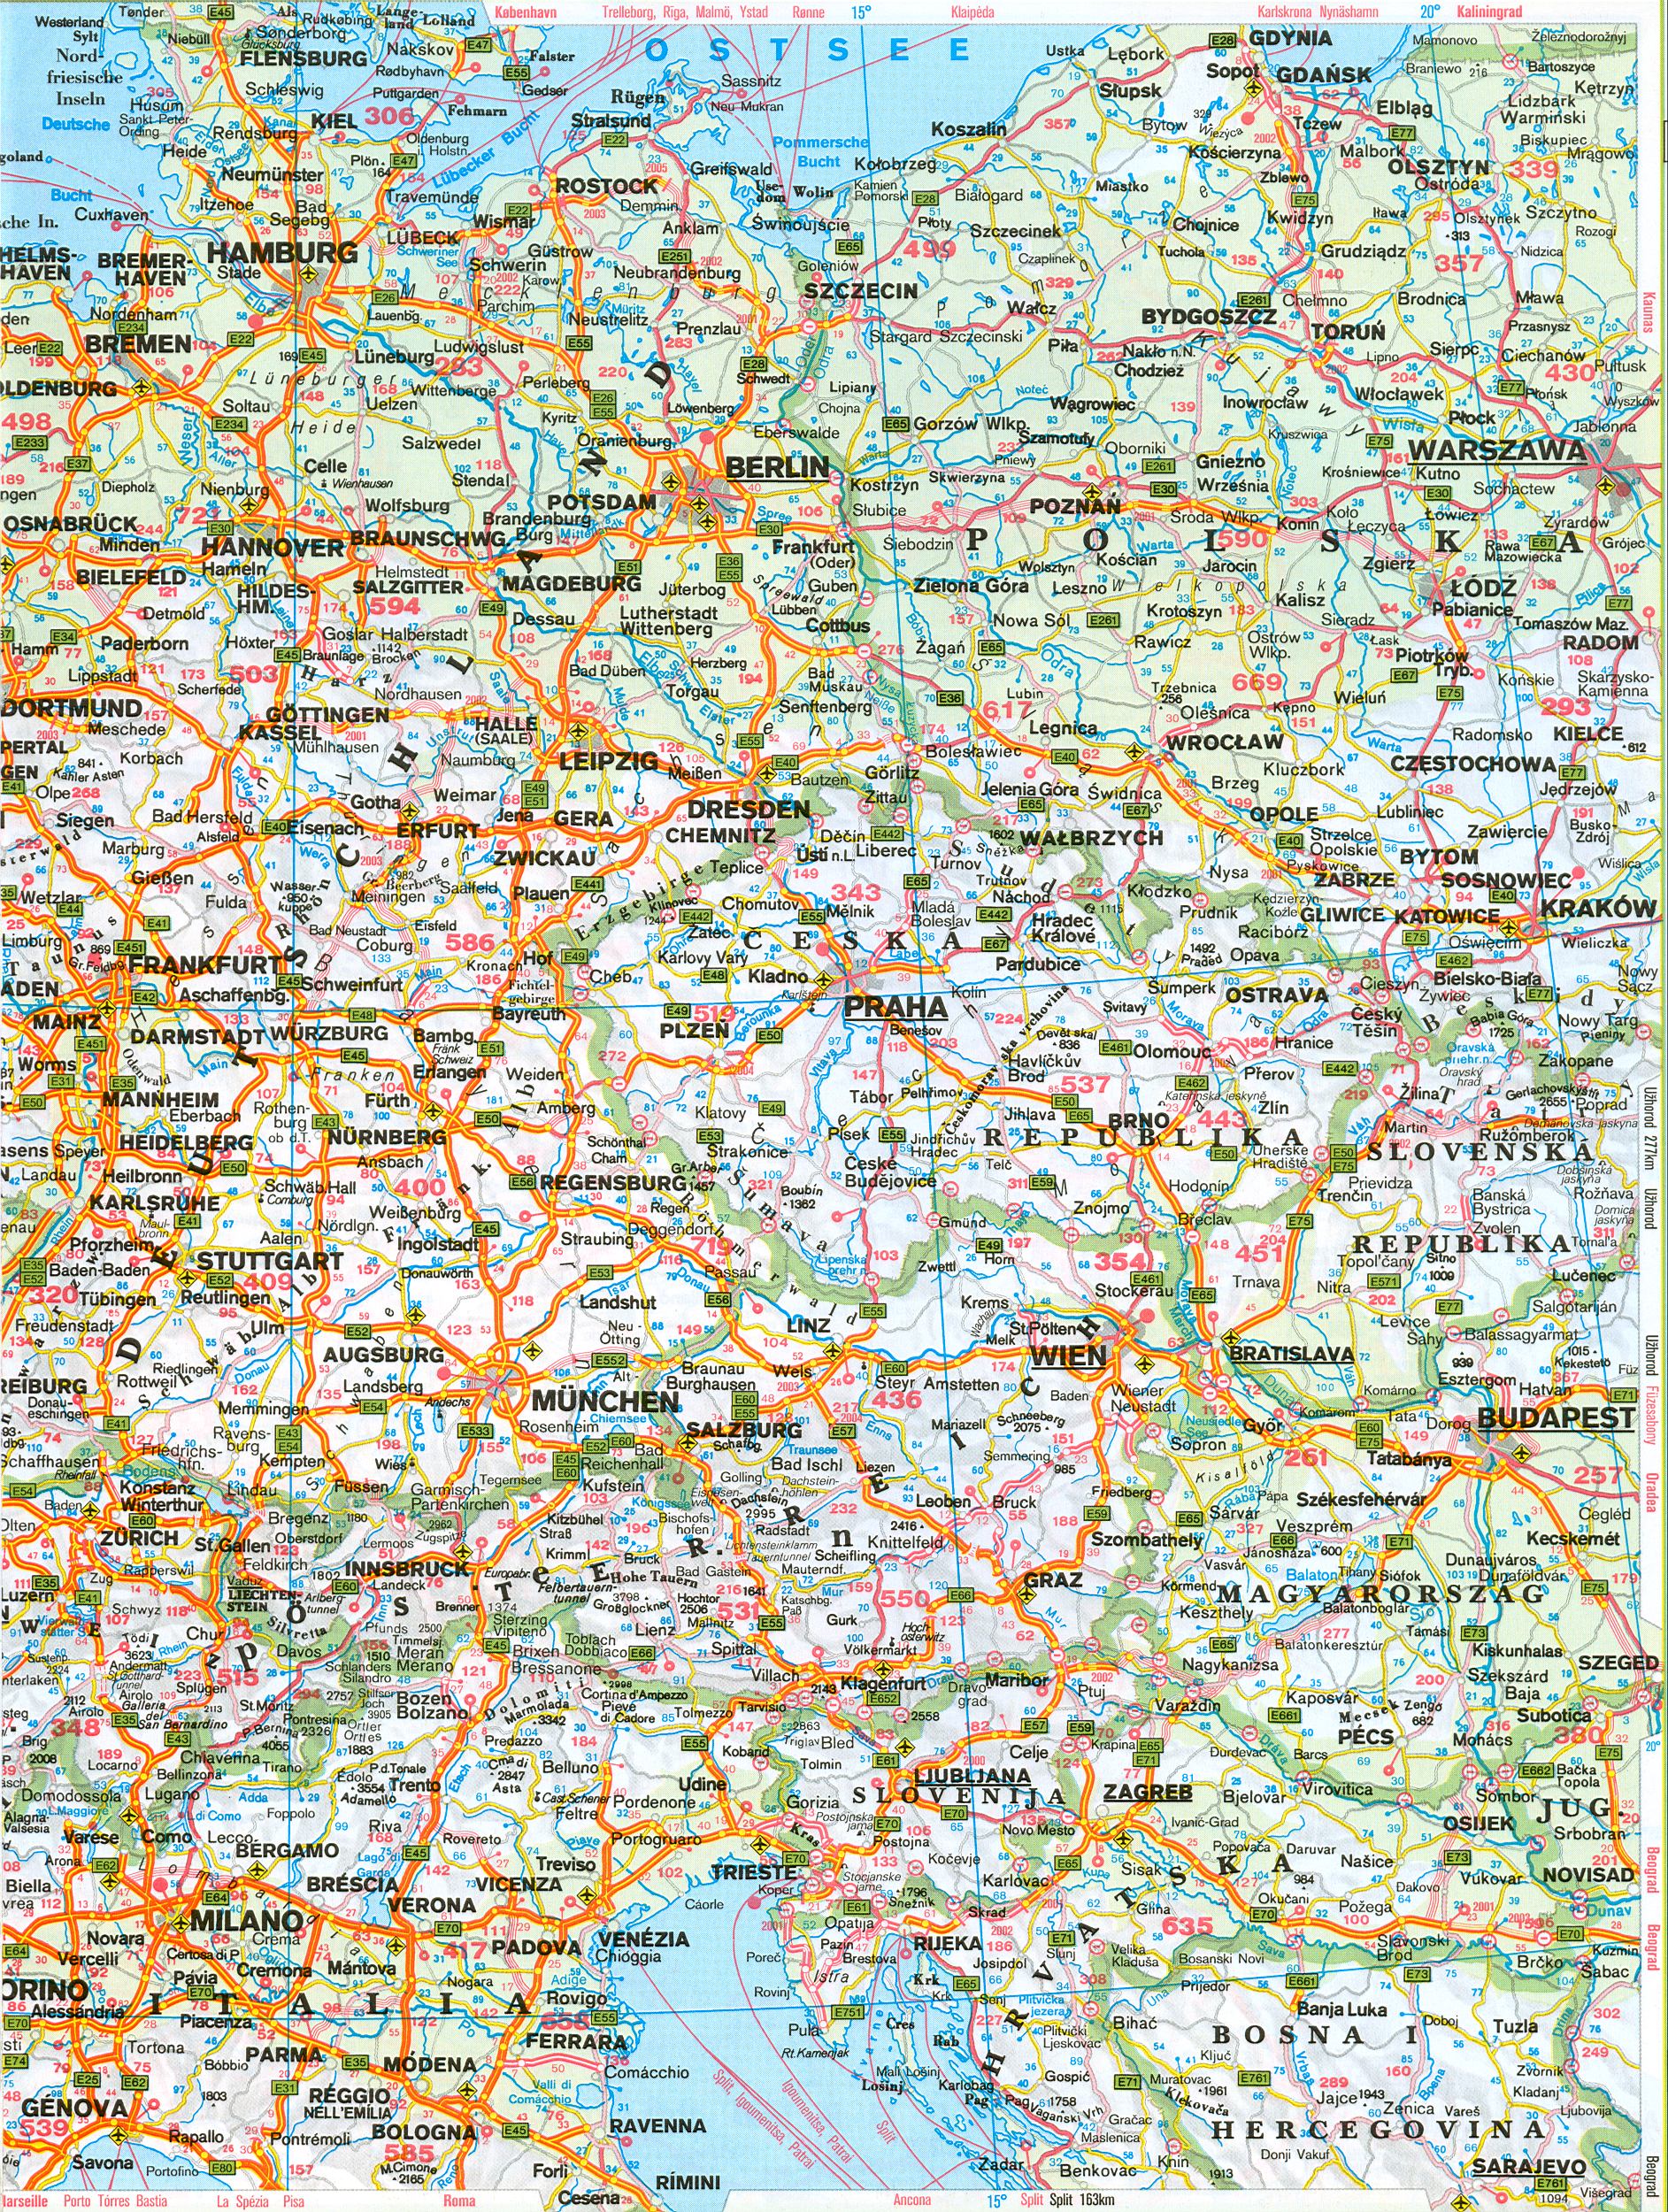 Автомобильная карта западной Европы. Подробная автомобильная карта западной Европы, B0 - 